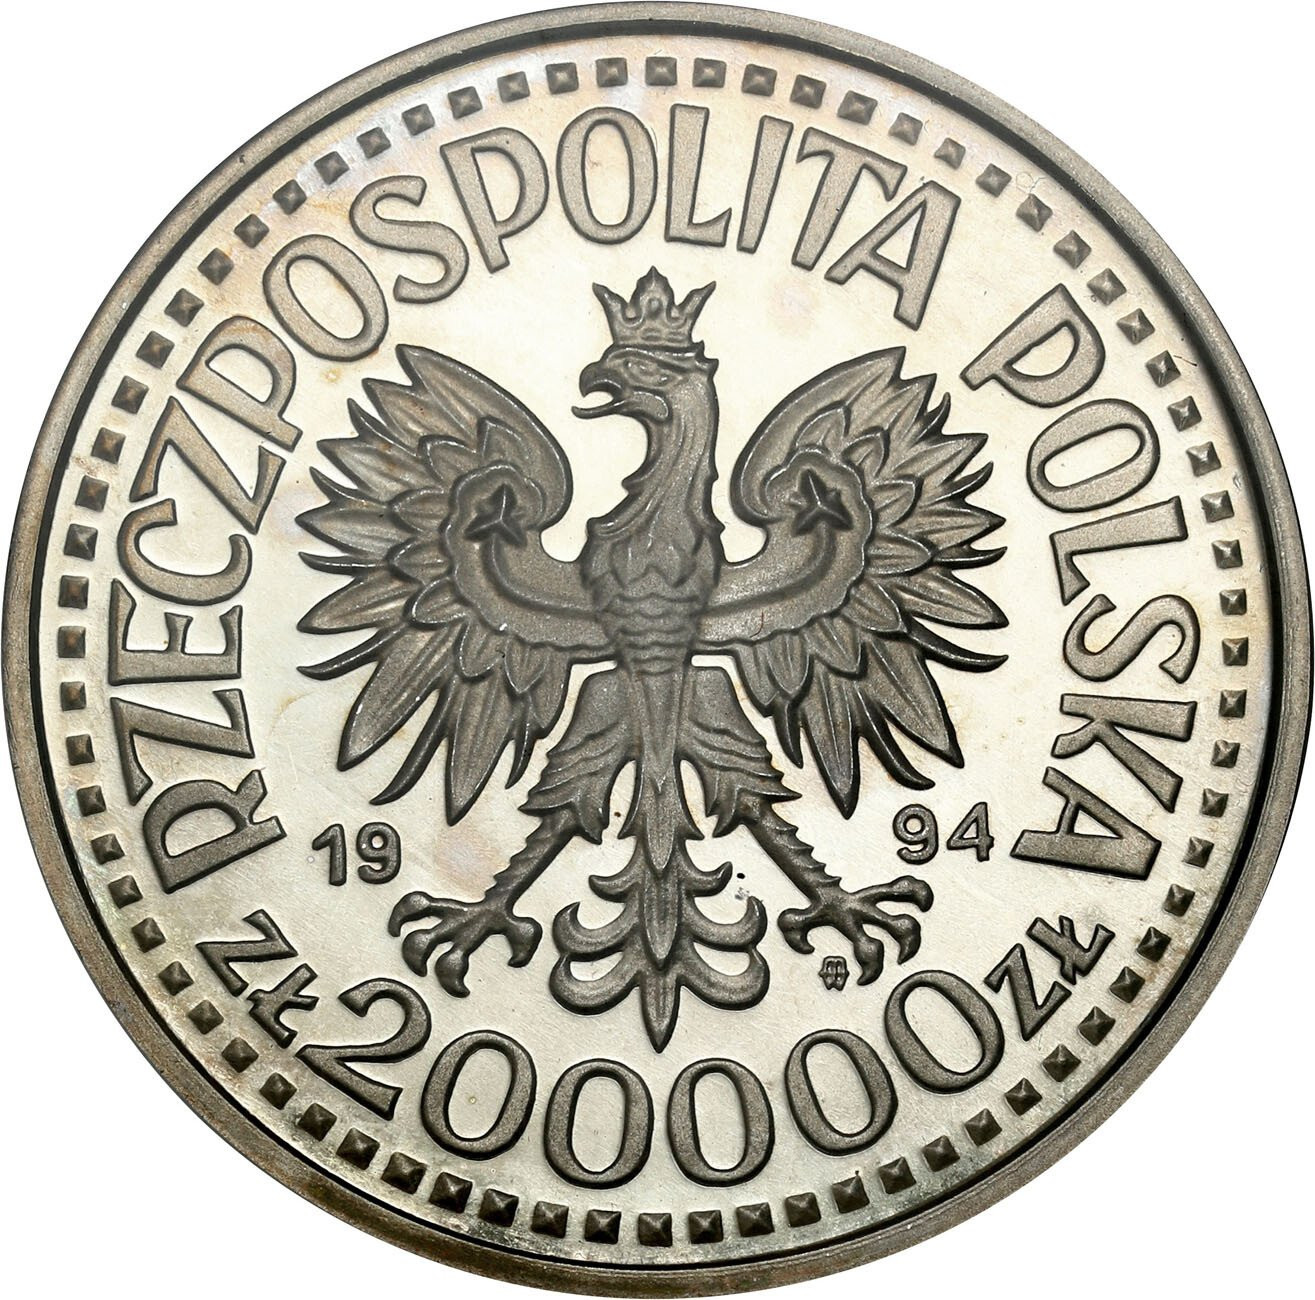 III RP. 200 000 zł 1994 Zygmunt I Stary - półpostać GCN PR70 - RZADKIE